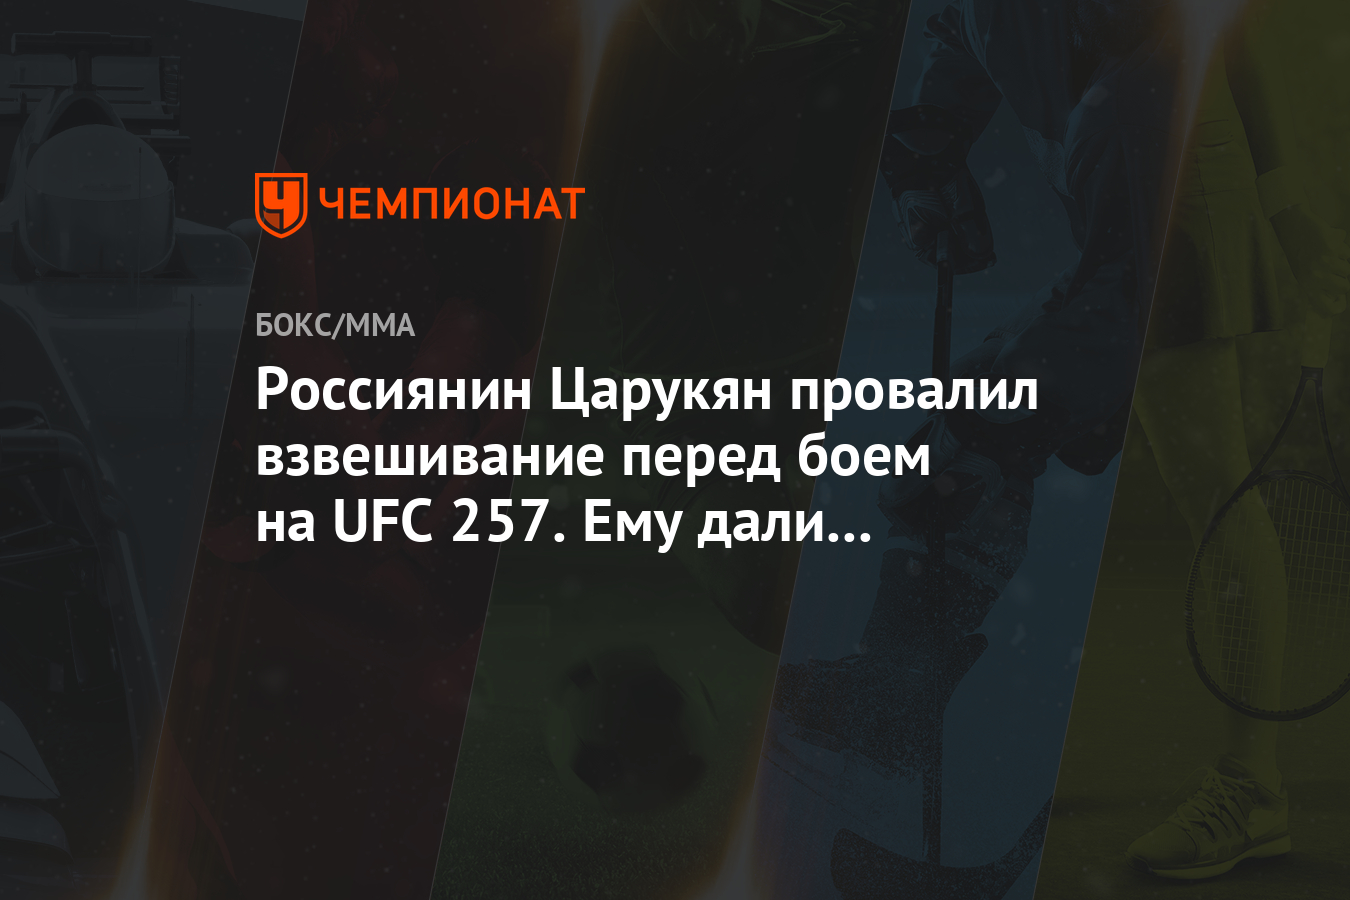 Россиянин Царукян провалил взвешивание перед боем на UFC 257. Ему дали